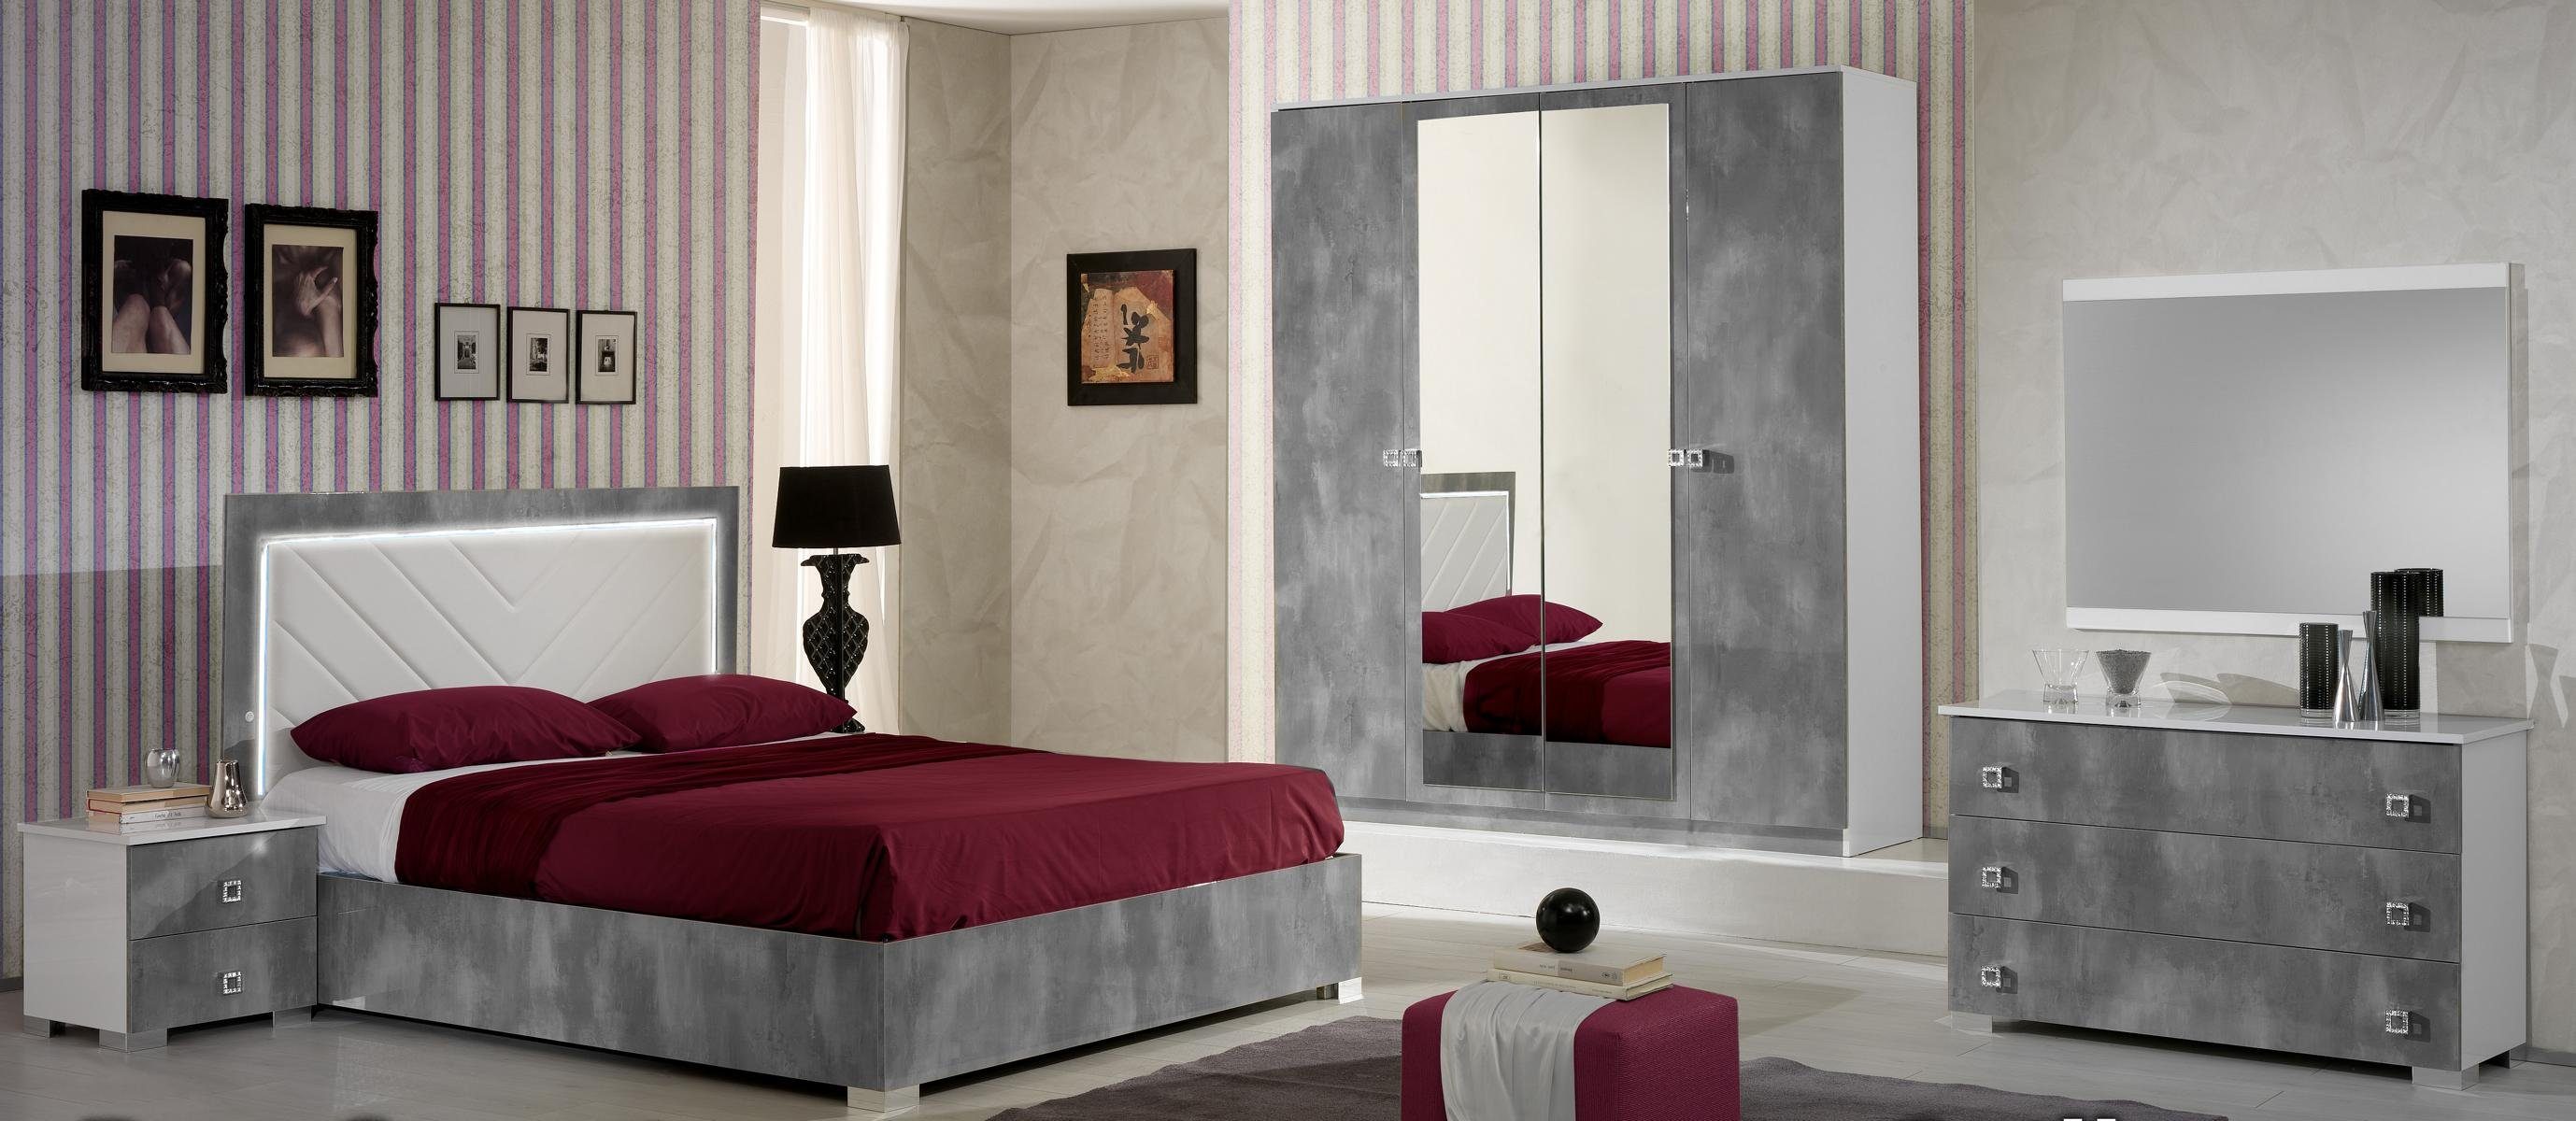 JVmoebel Schlafzimmer-Set 6tlg. Schlafzimmer Italienische Möbel Set LuxusBett Betten Schrank